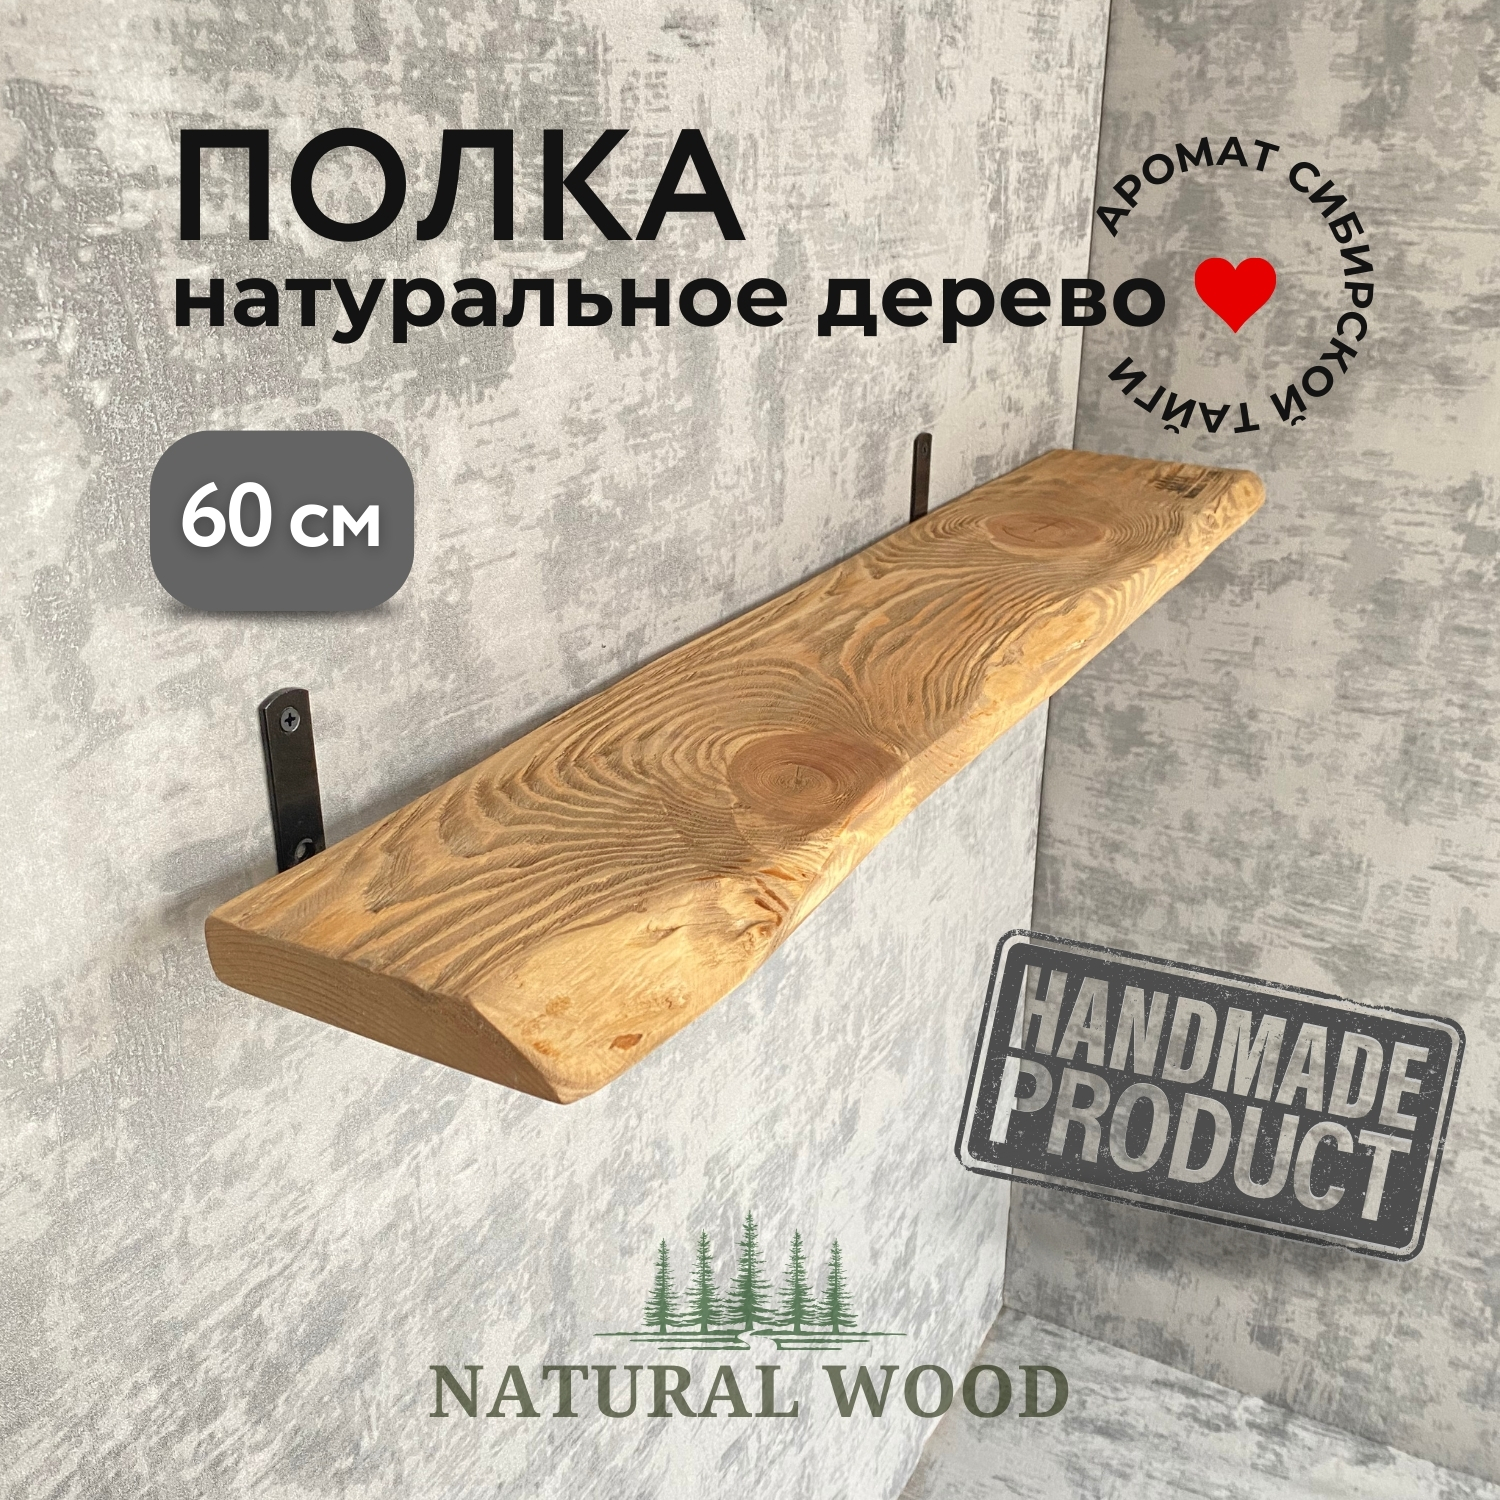 Полка настенная деревянная Natural wood 60 см